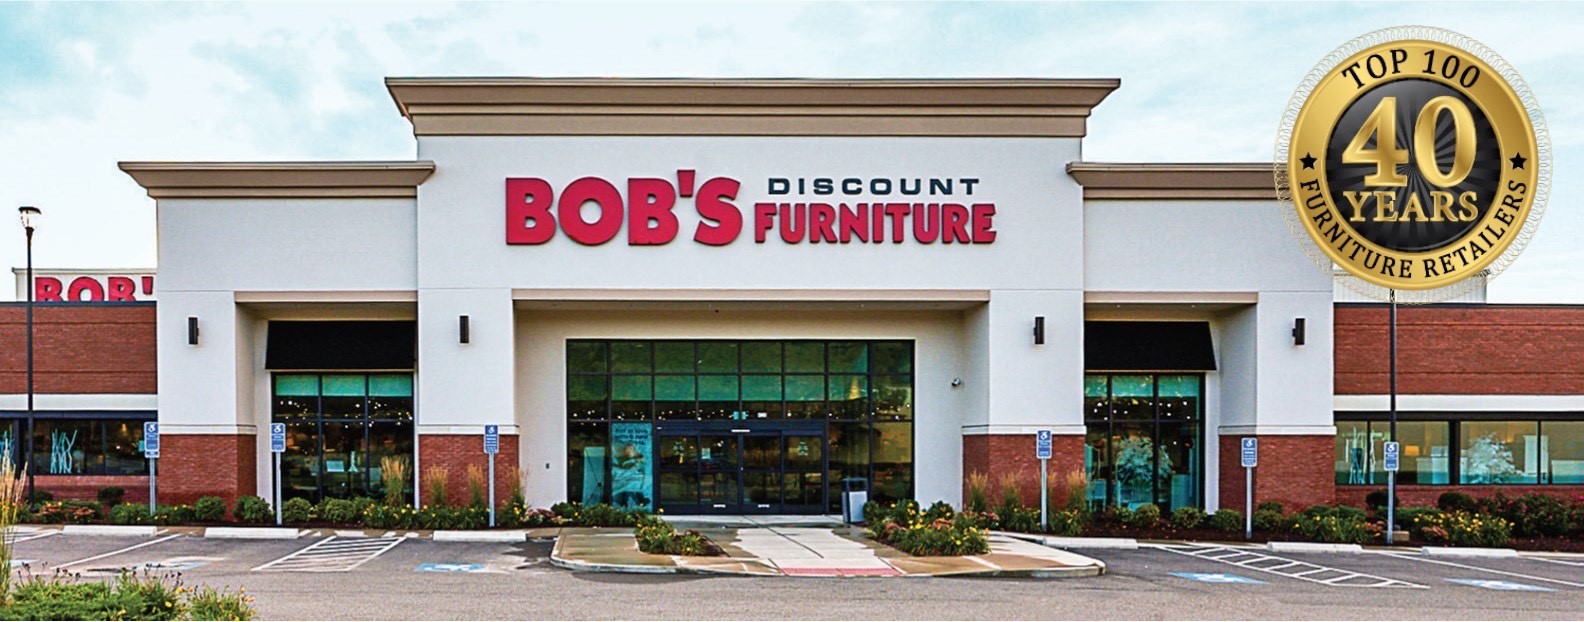 Bob’s Discount Furniture Named Top Ten U.S. Furniture Store – Bob's Blog